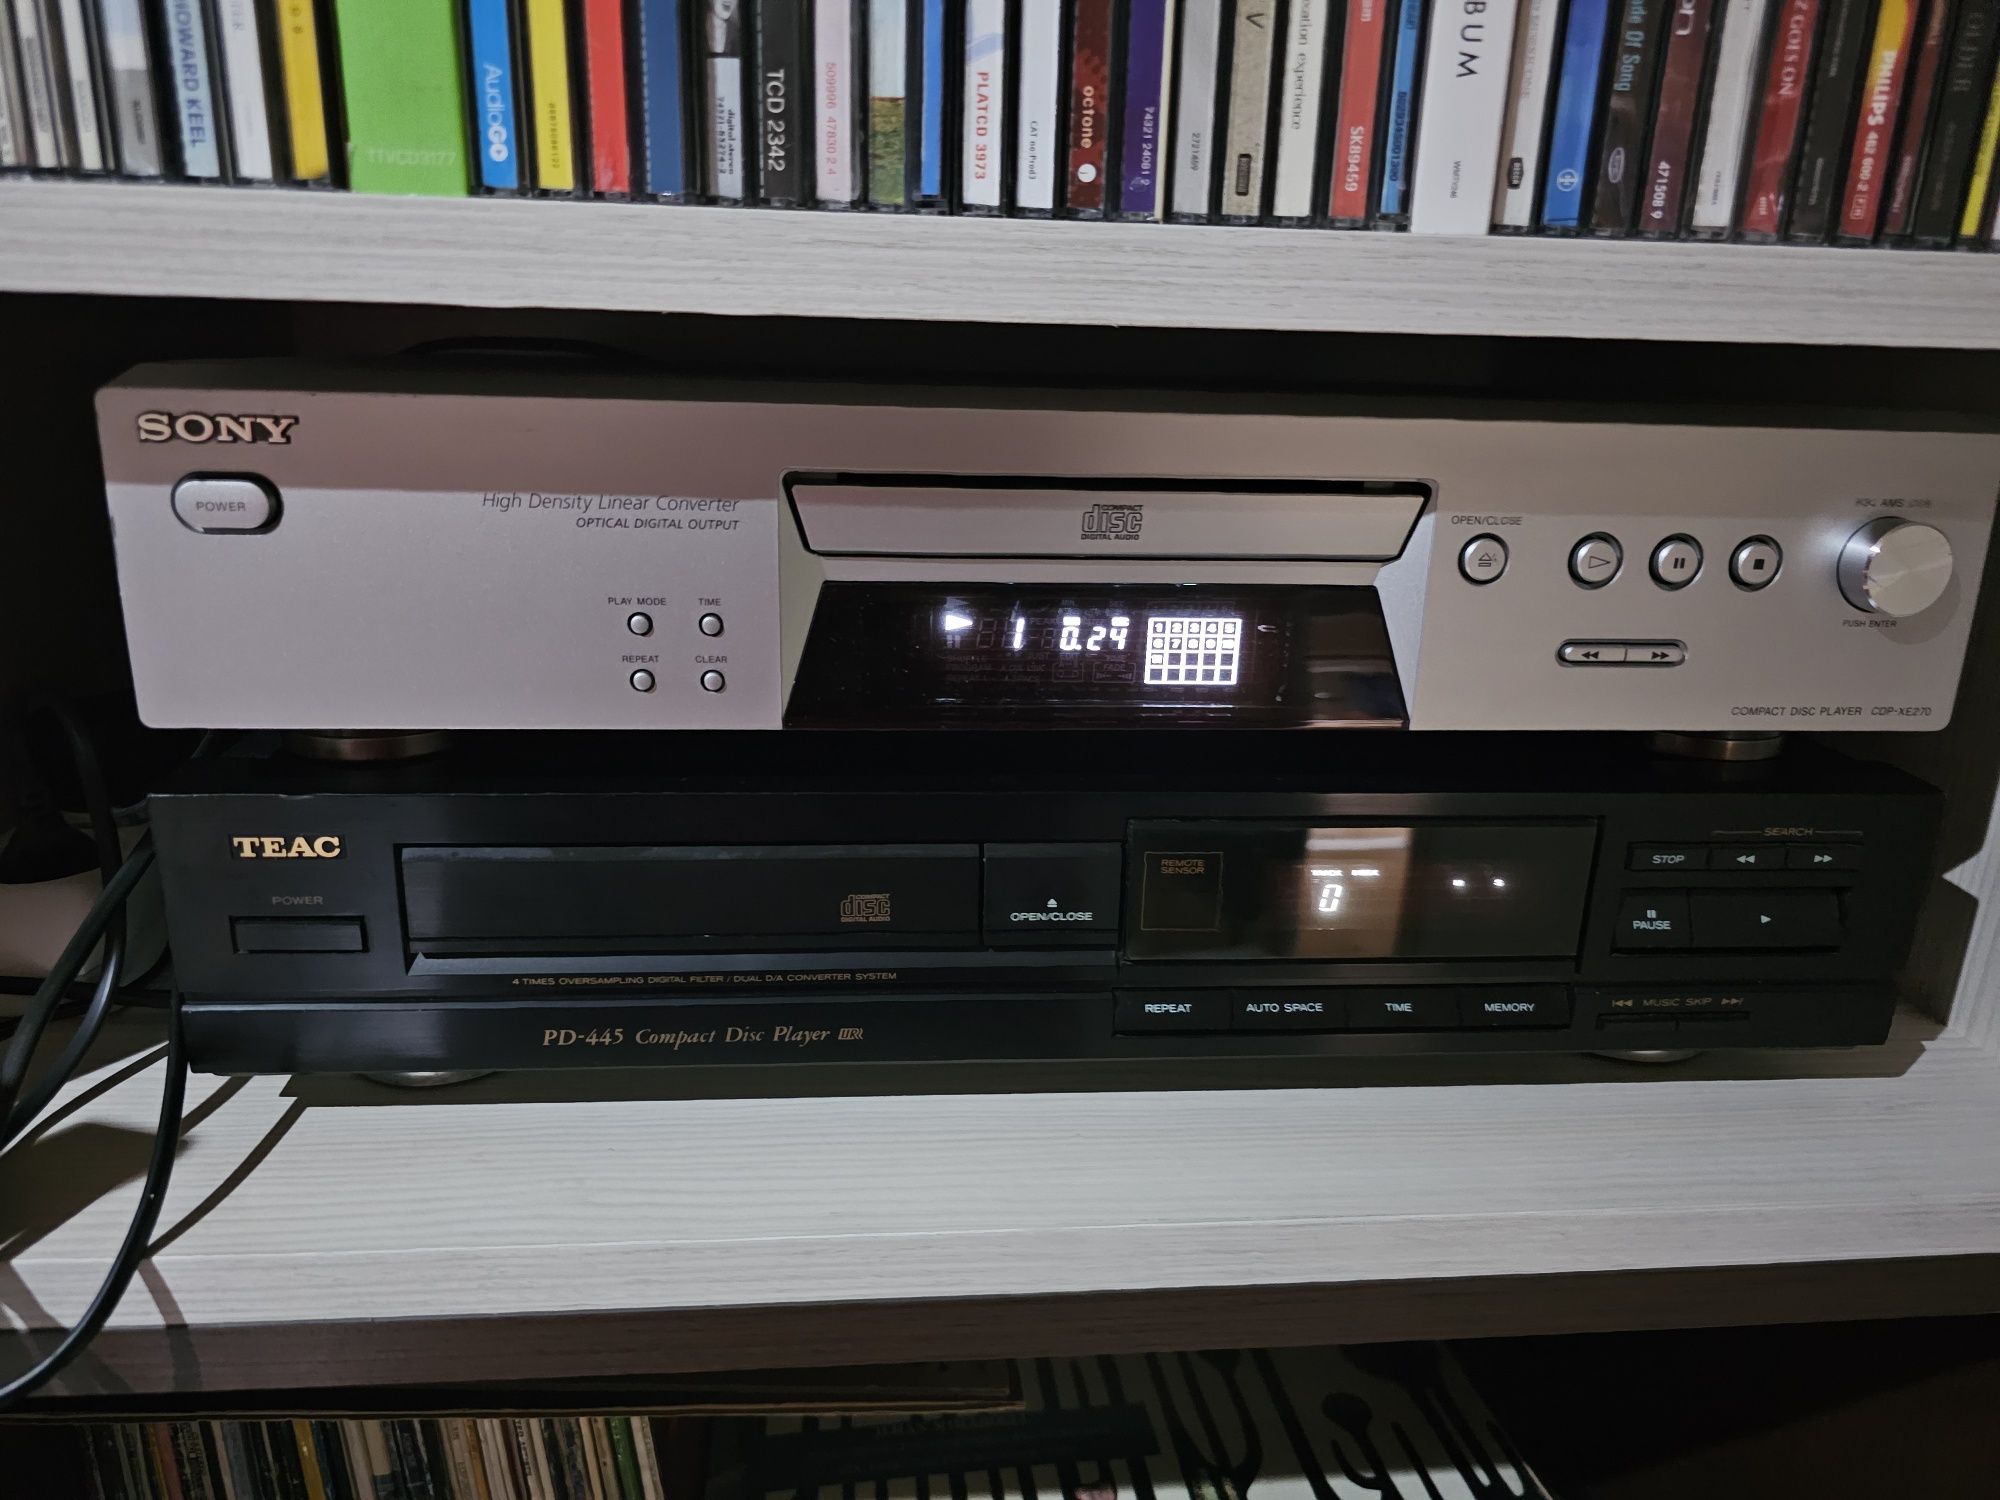 Pioneer DVR 920H si CT-W630R, Yamaha CDX 390 și DVD S700